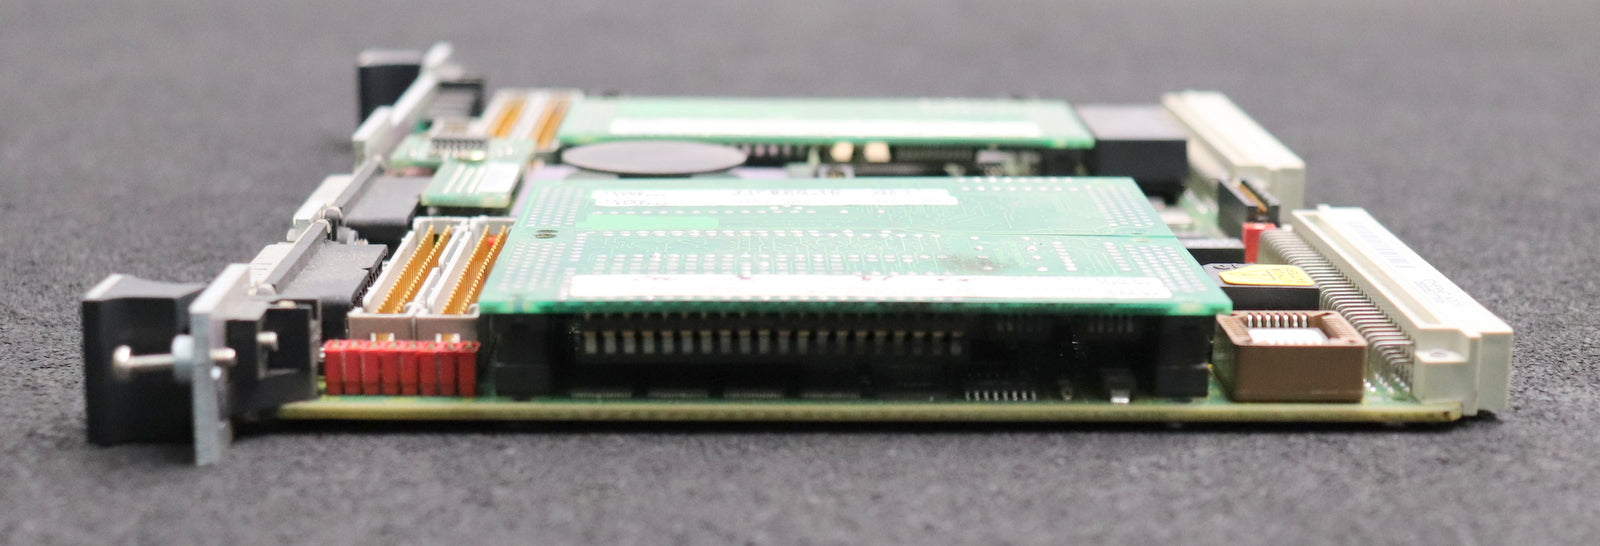 Bild des Artikels TEWS-DATENTECHNIK-/-MOTOROLA-CPU-Microprocessor-Board-MVME-162-512A-68040-CPU